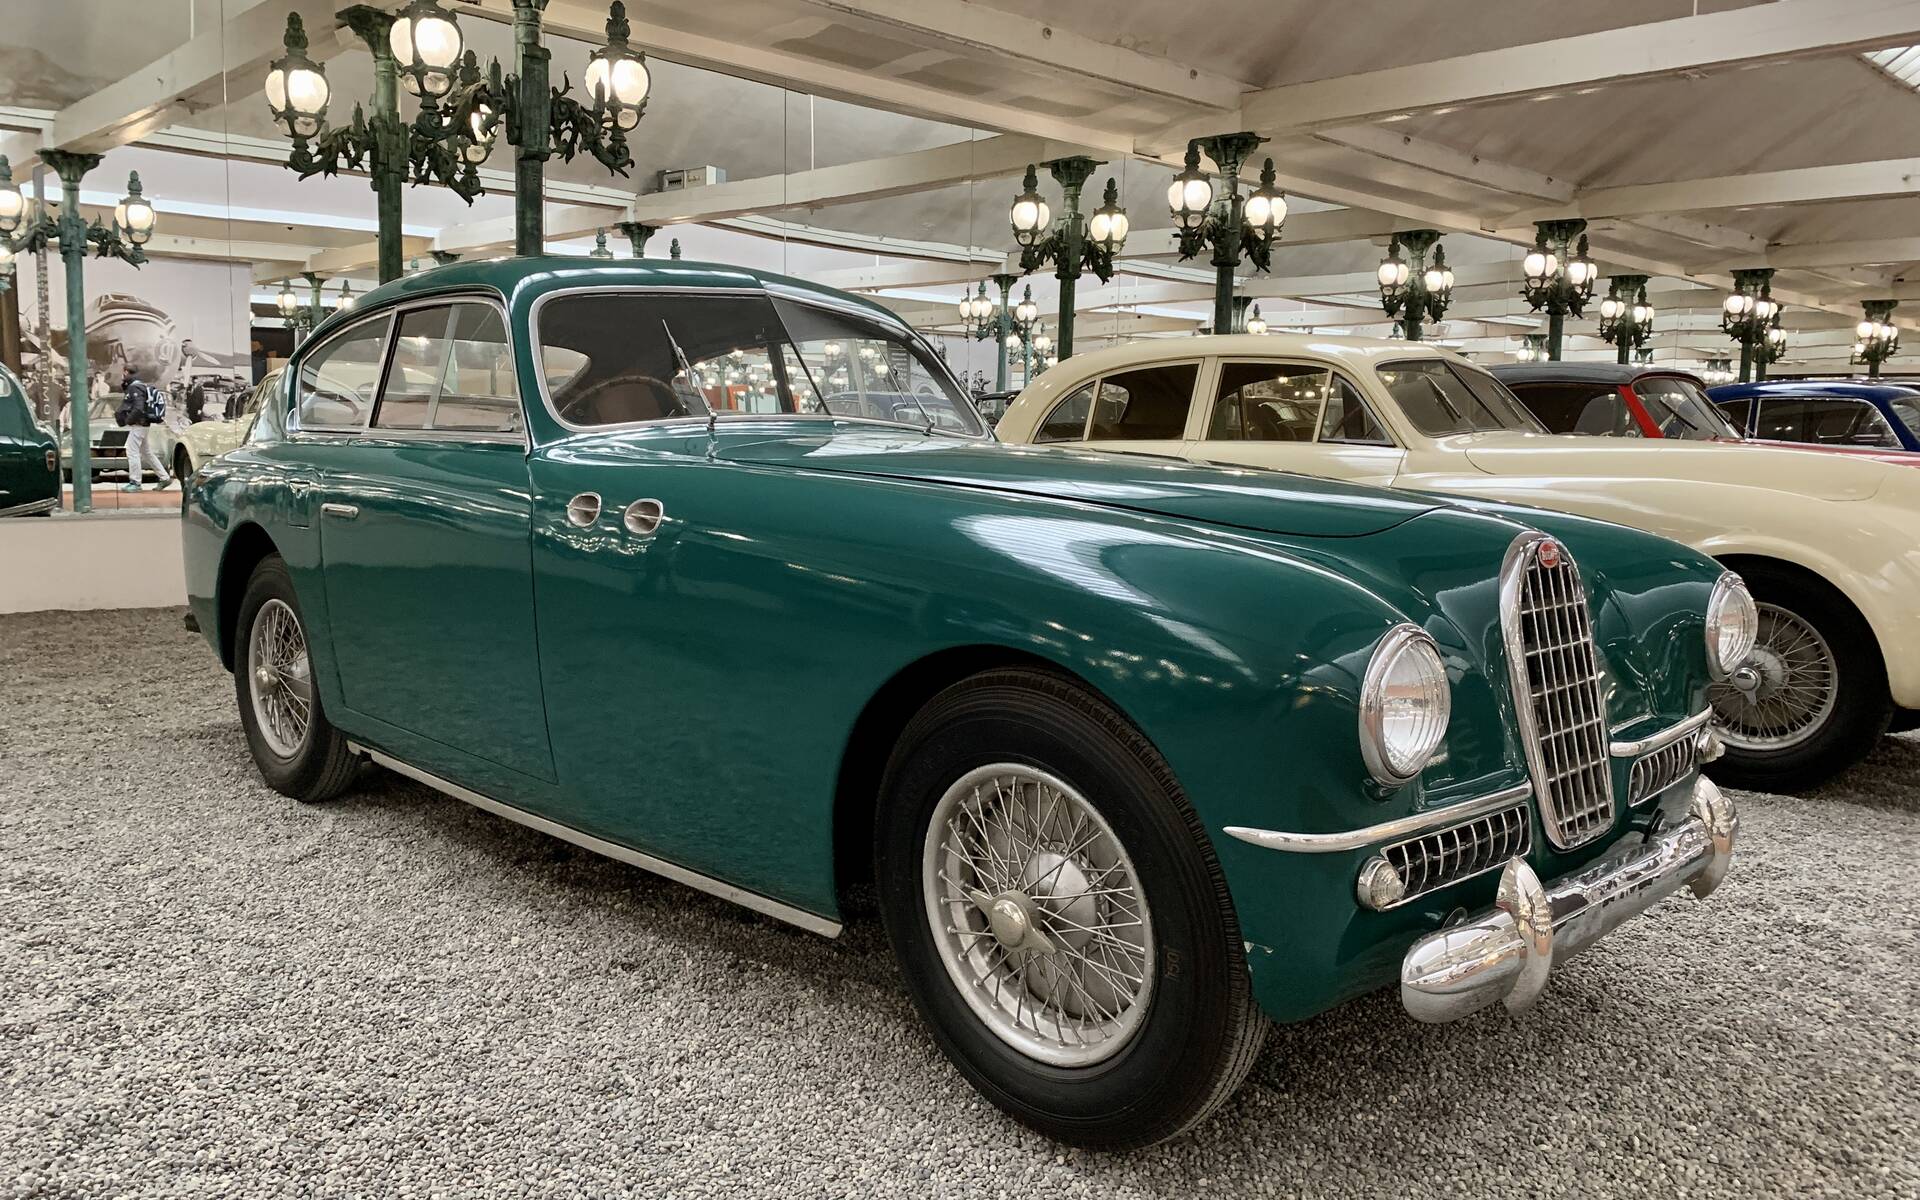 En photos : une centaine de Bugatti réunies dans un même musée 503068-en-photos-des-dizaines-de-bugatti-reunies-dans-un-meme-musee